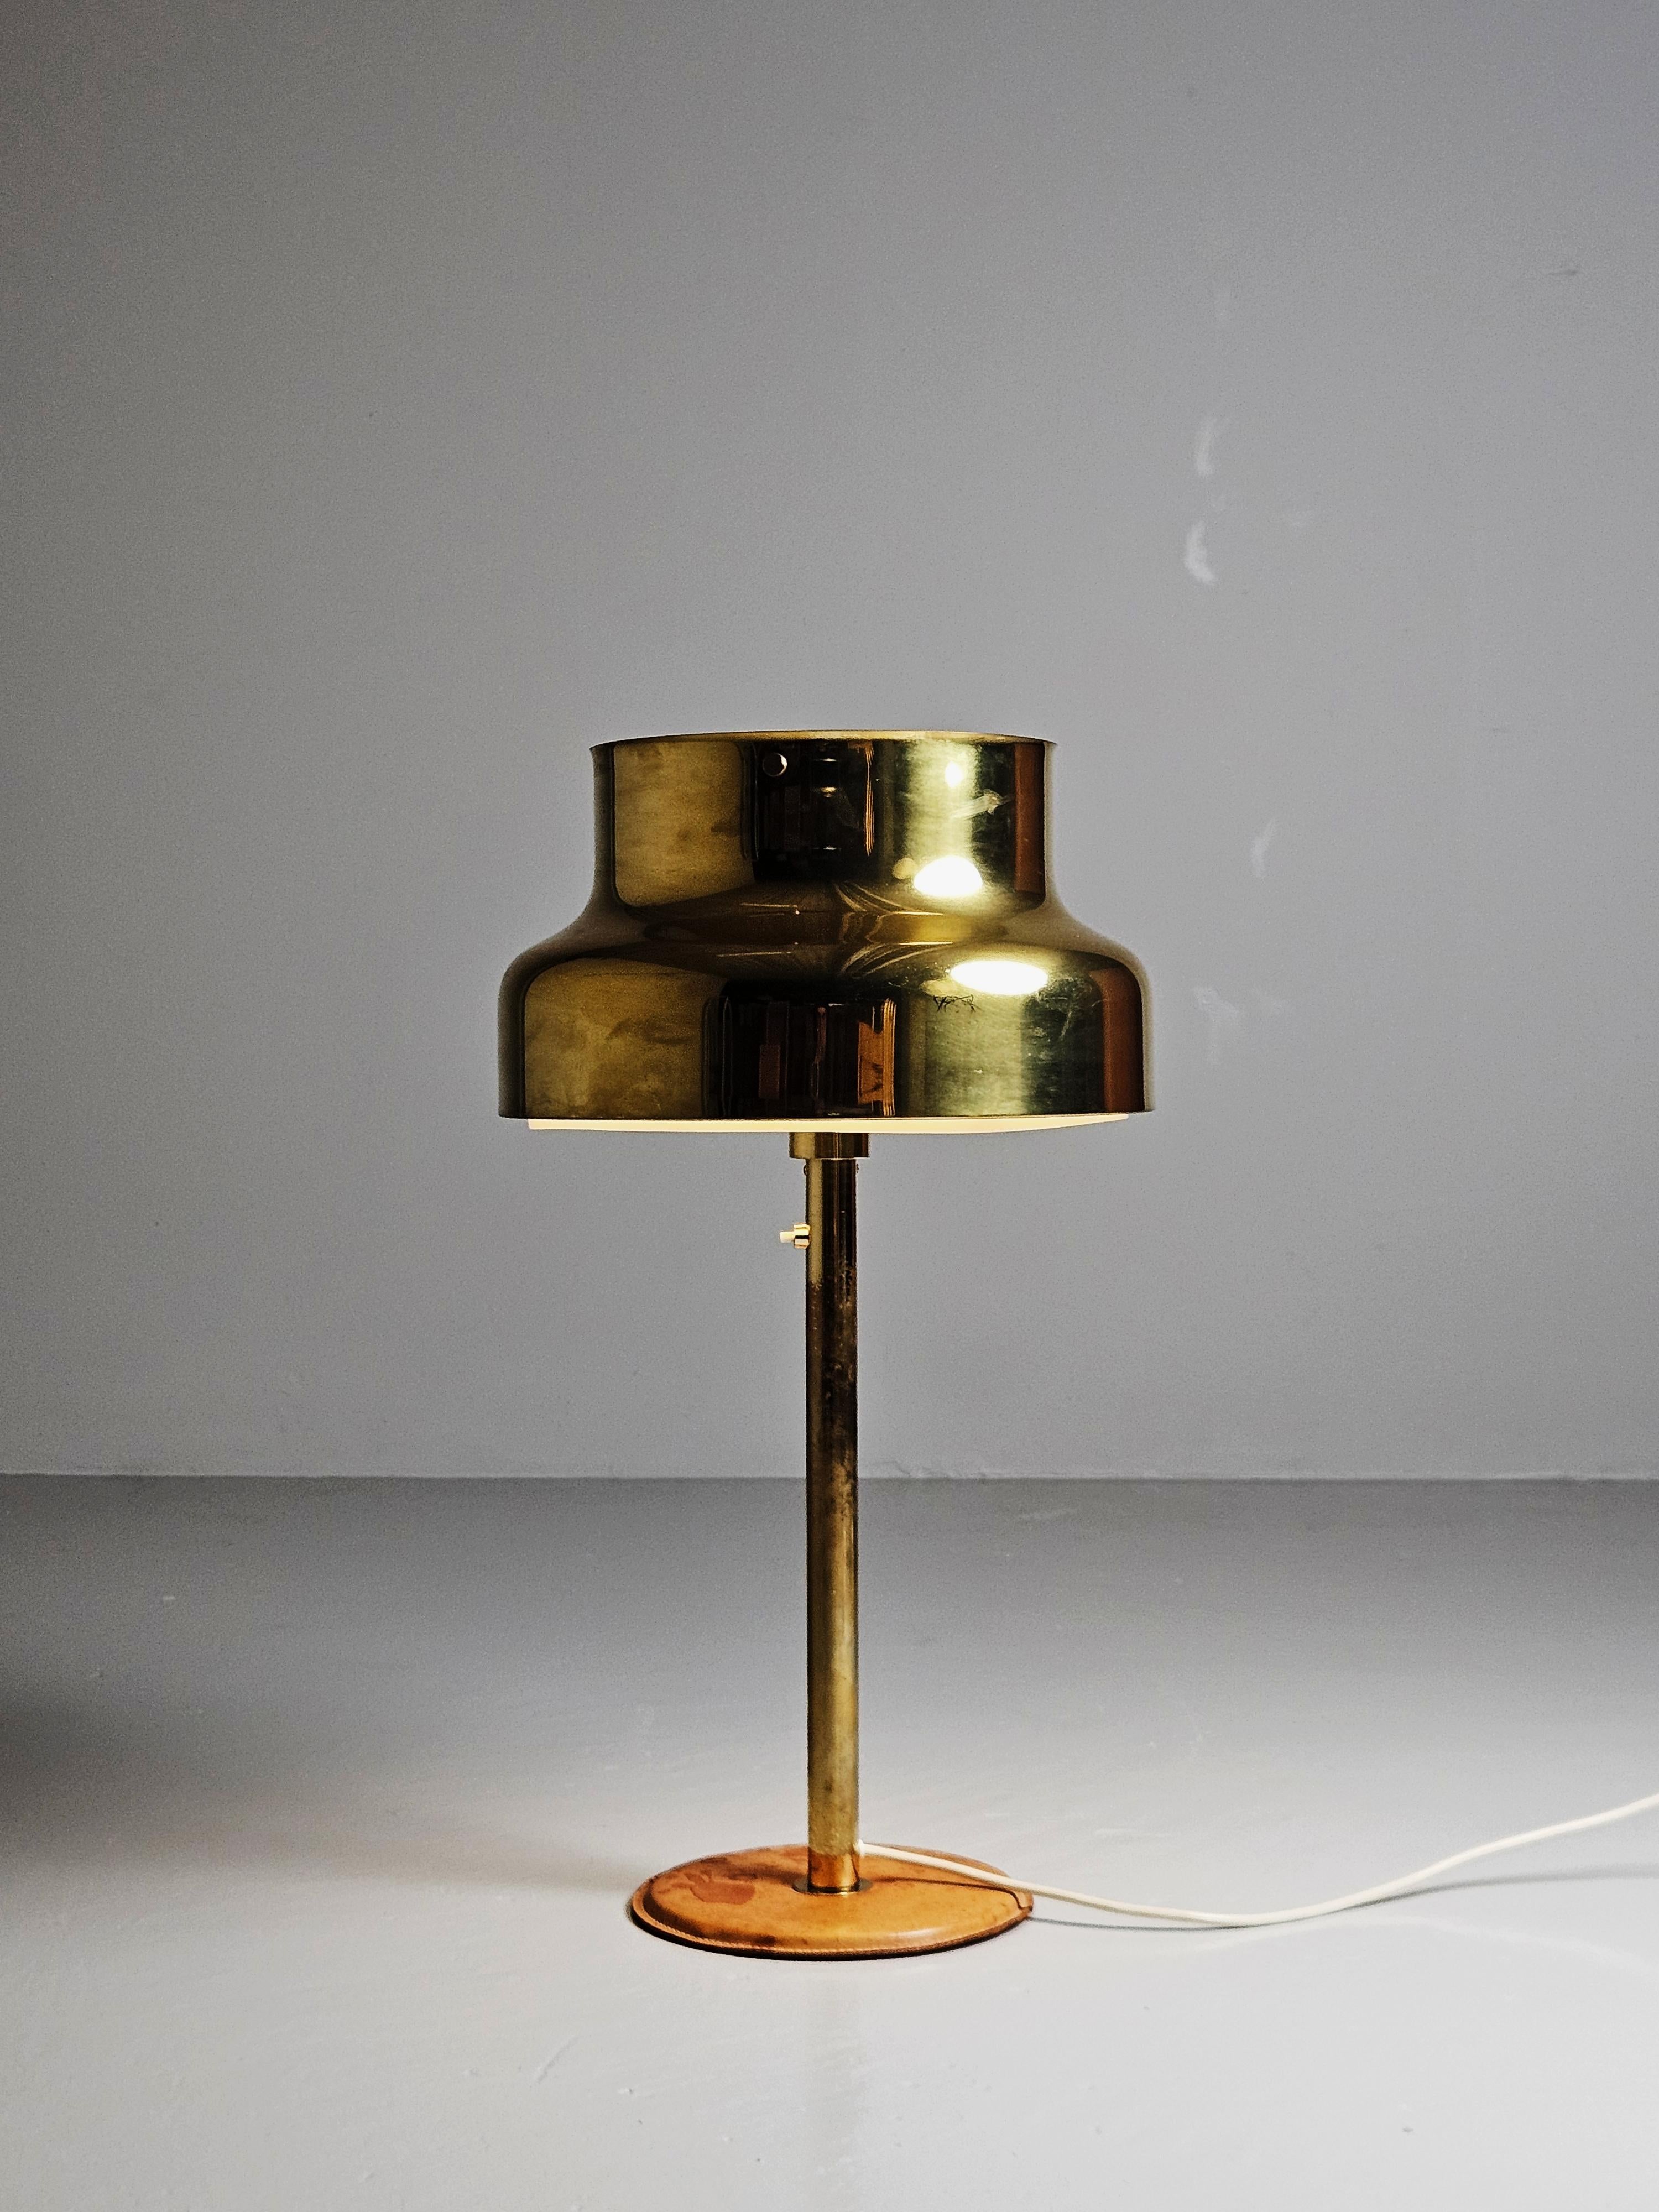 Schöne Tischlampe aus Messing, entworfen von Anders Pehrson und hergestellt von Atlejé Lyktan, Schweden, in den 1960er Jahren. 

Bigli Modell aus Messing mit einem Lederfuß. 